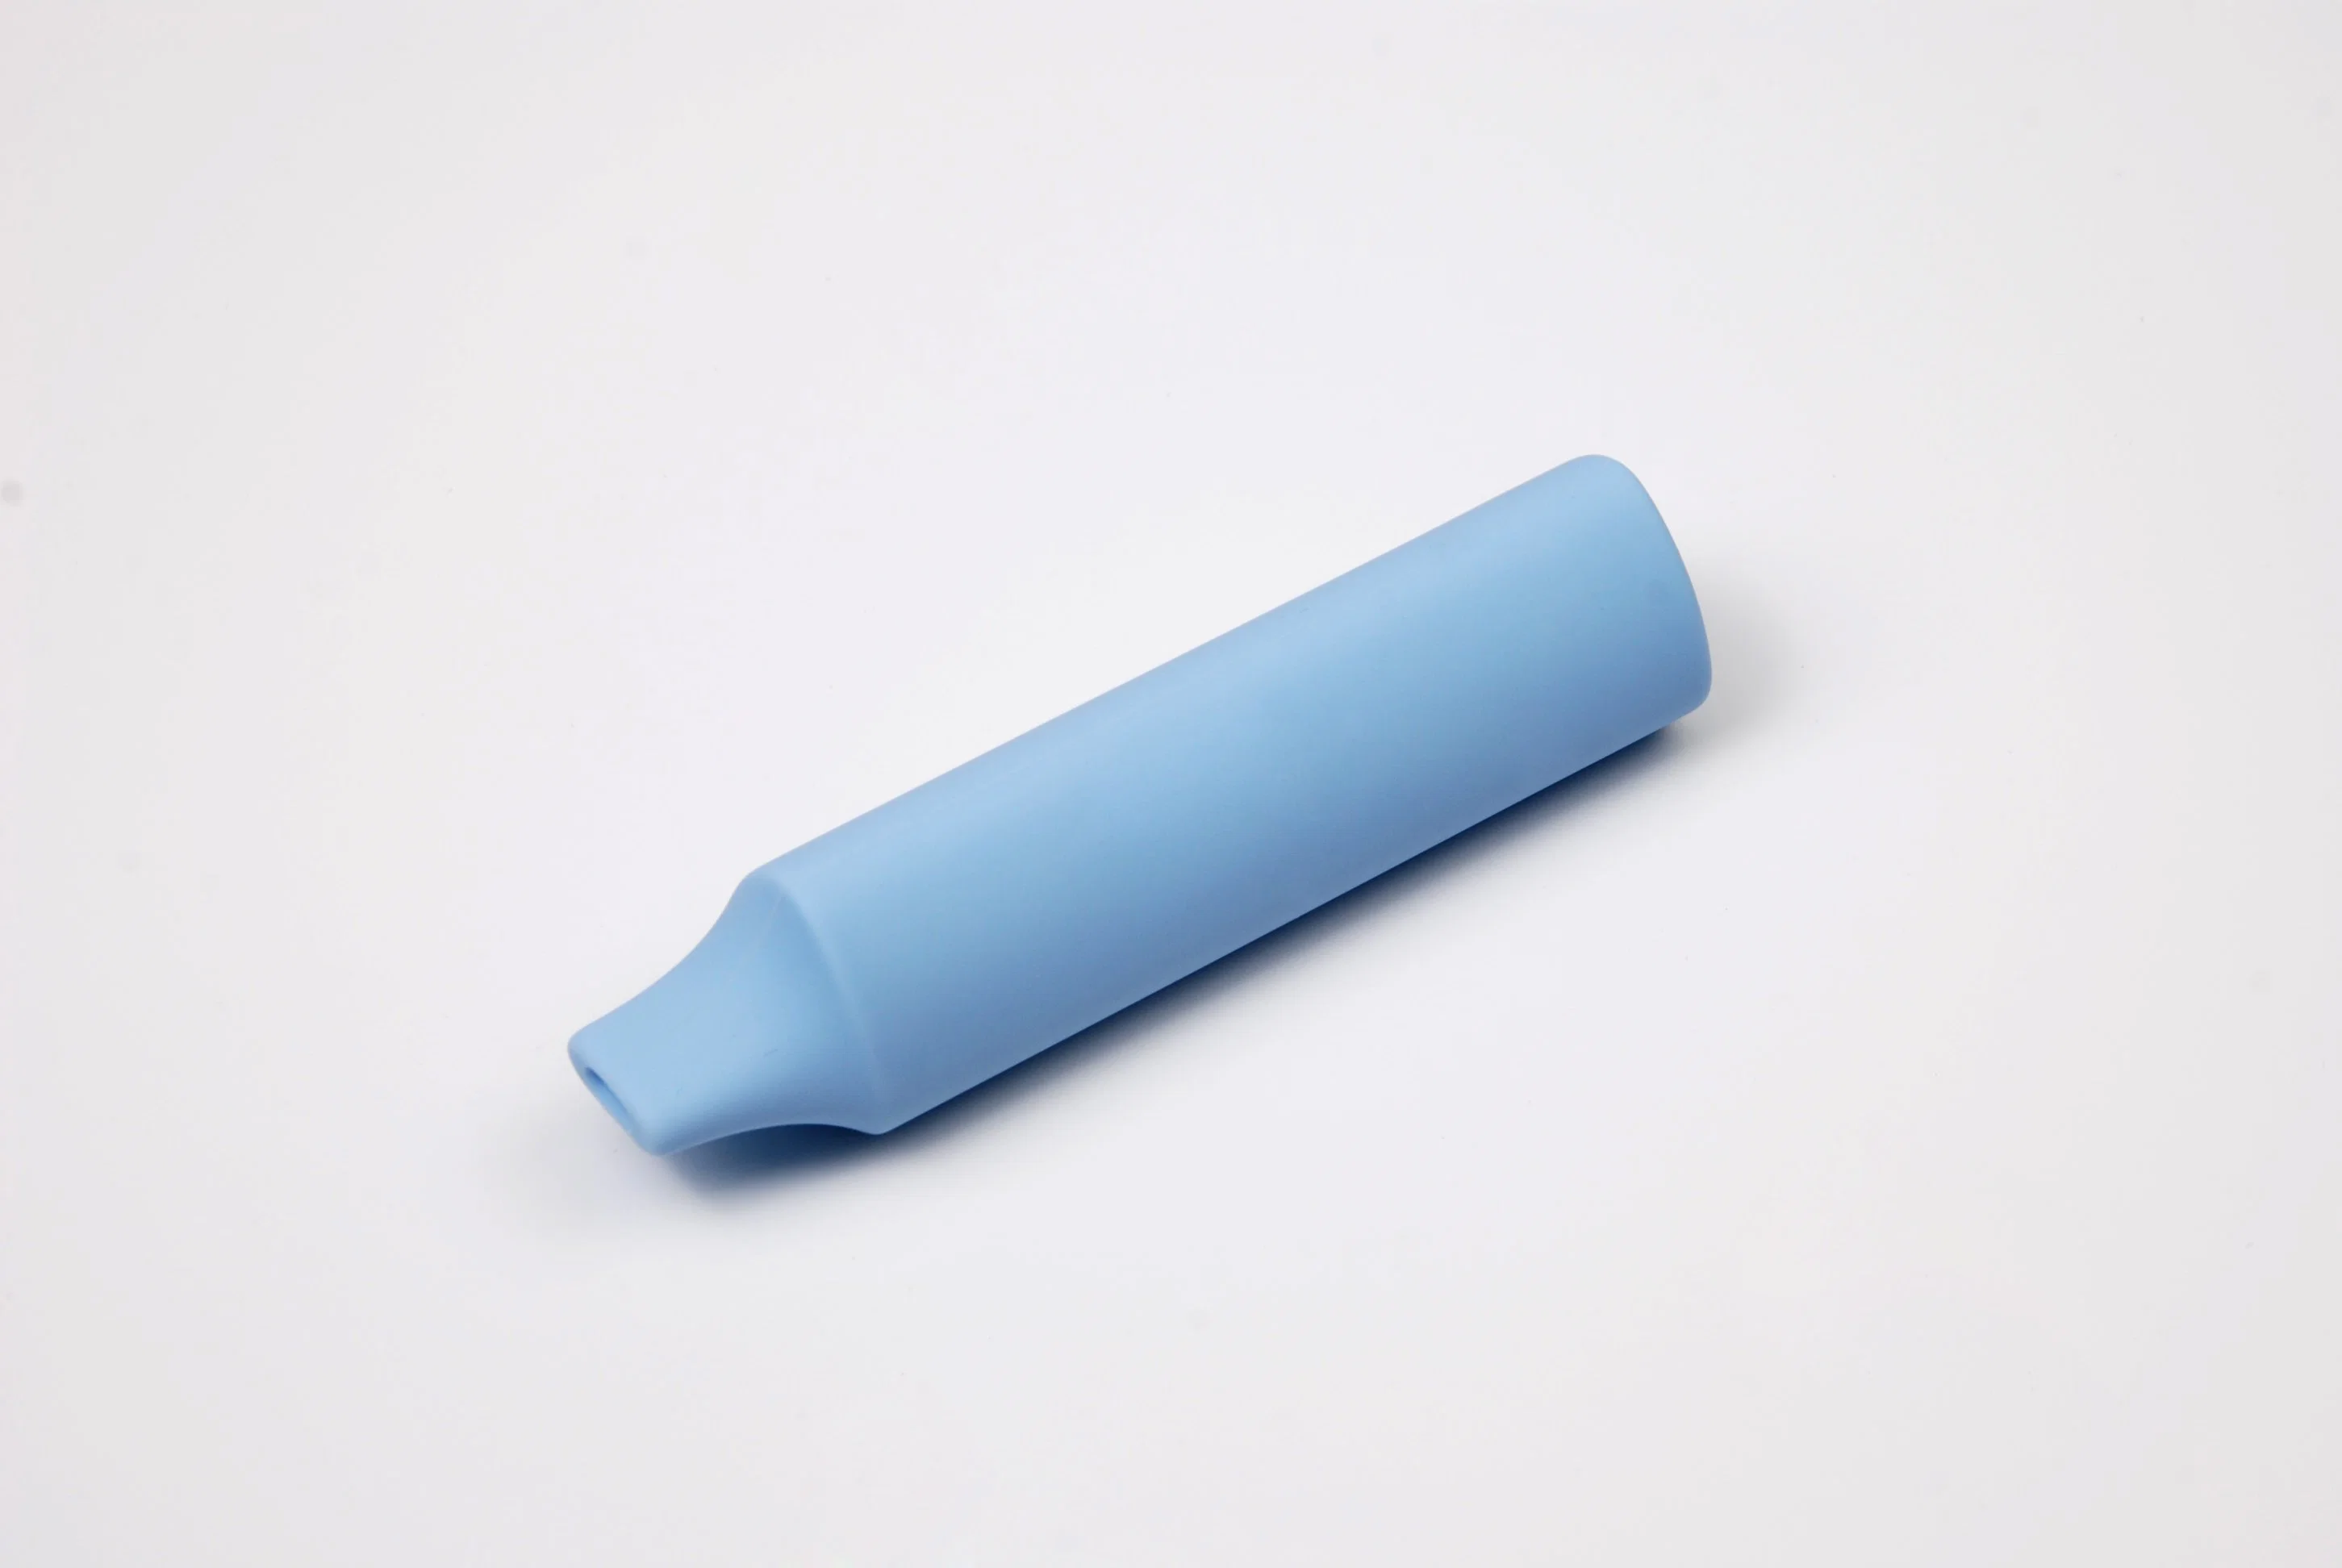 Heißer Verkauf und Fabrik Preis Einweg-Vape Silikon Material E-Zigarre Geekbars 3000 Puffs Einweg-Vaporizer Rauchen Pen